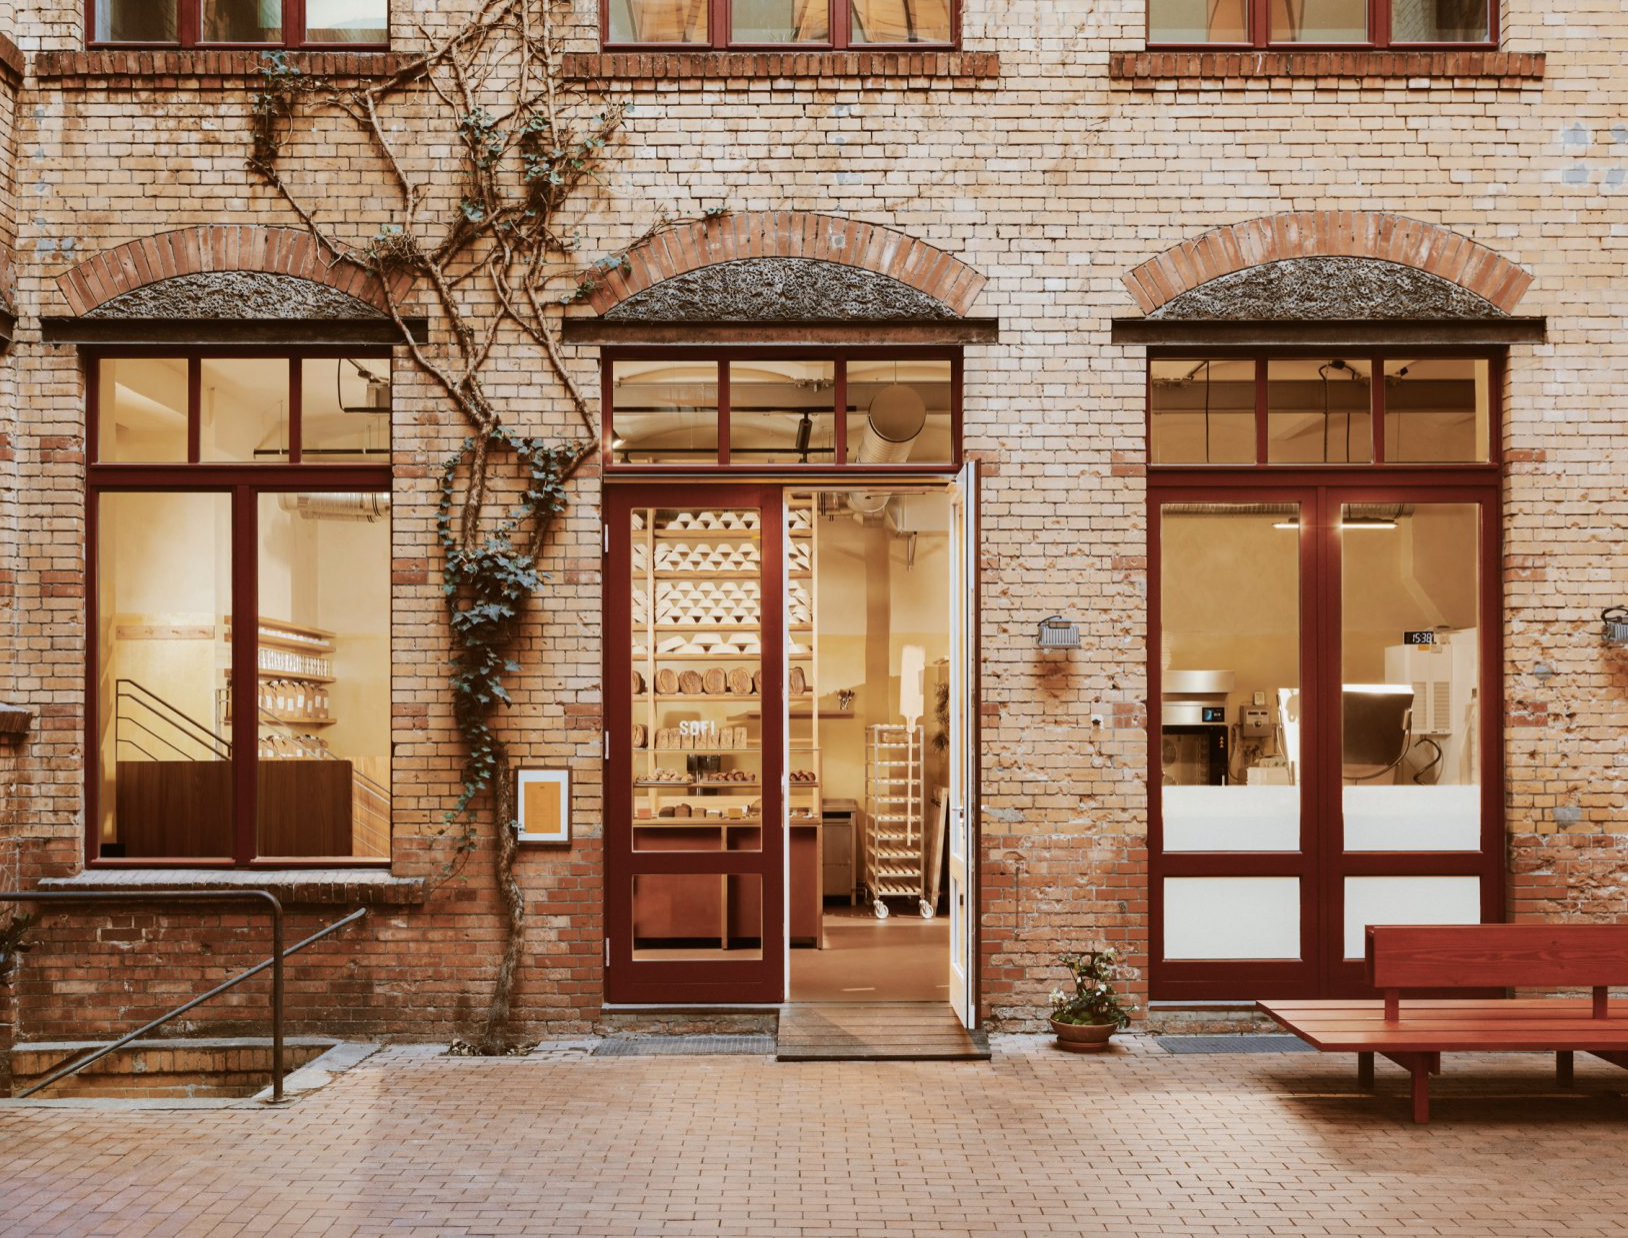 Tonos cálidos y horno central definen la panadería Sofi en Berlín